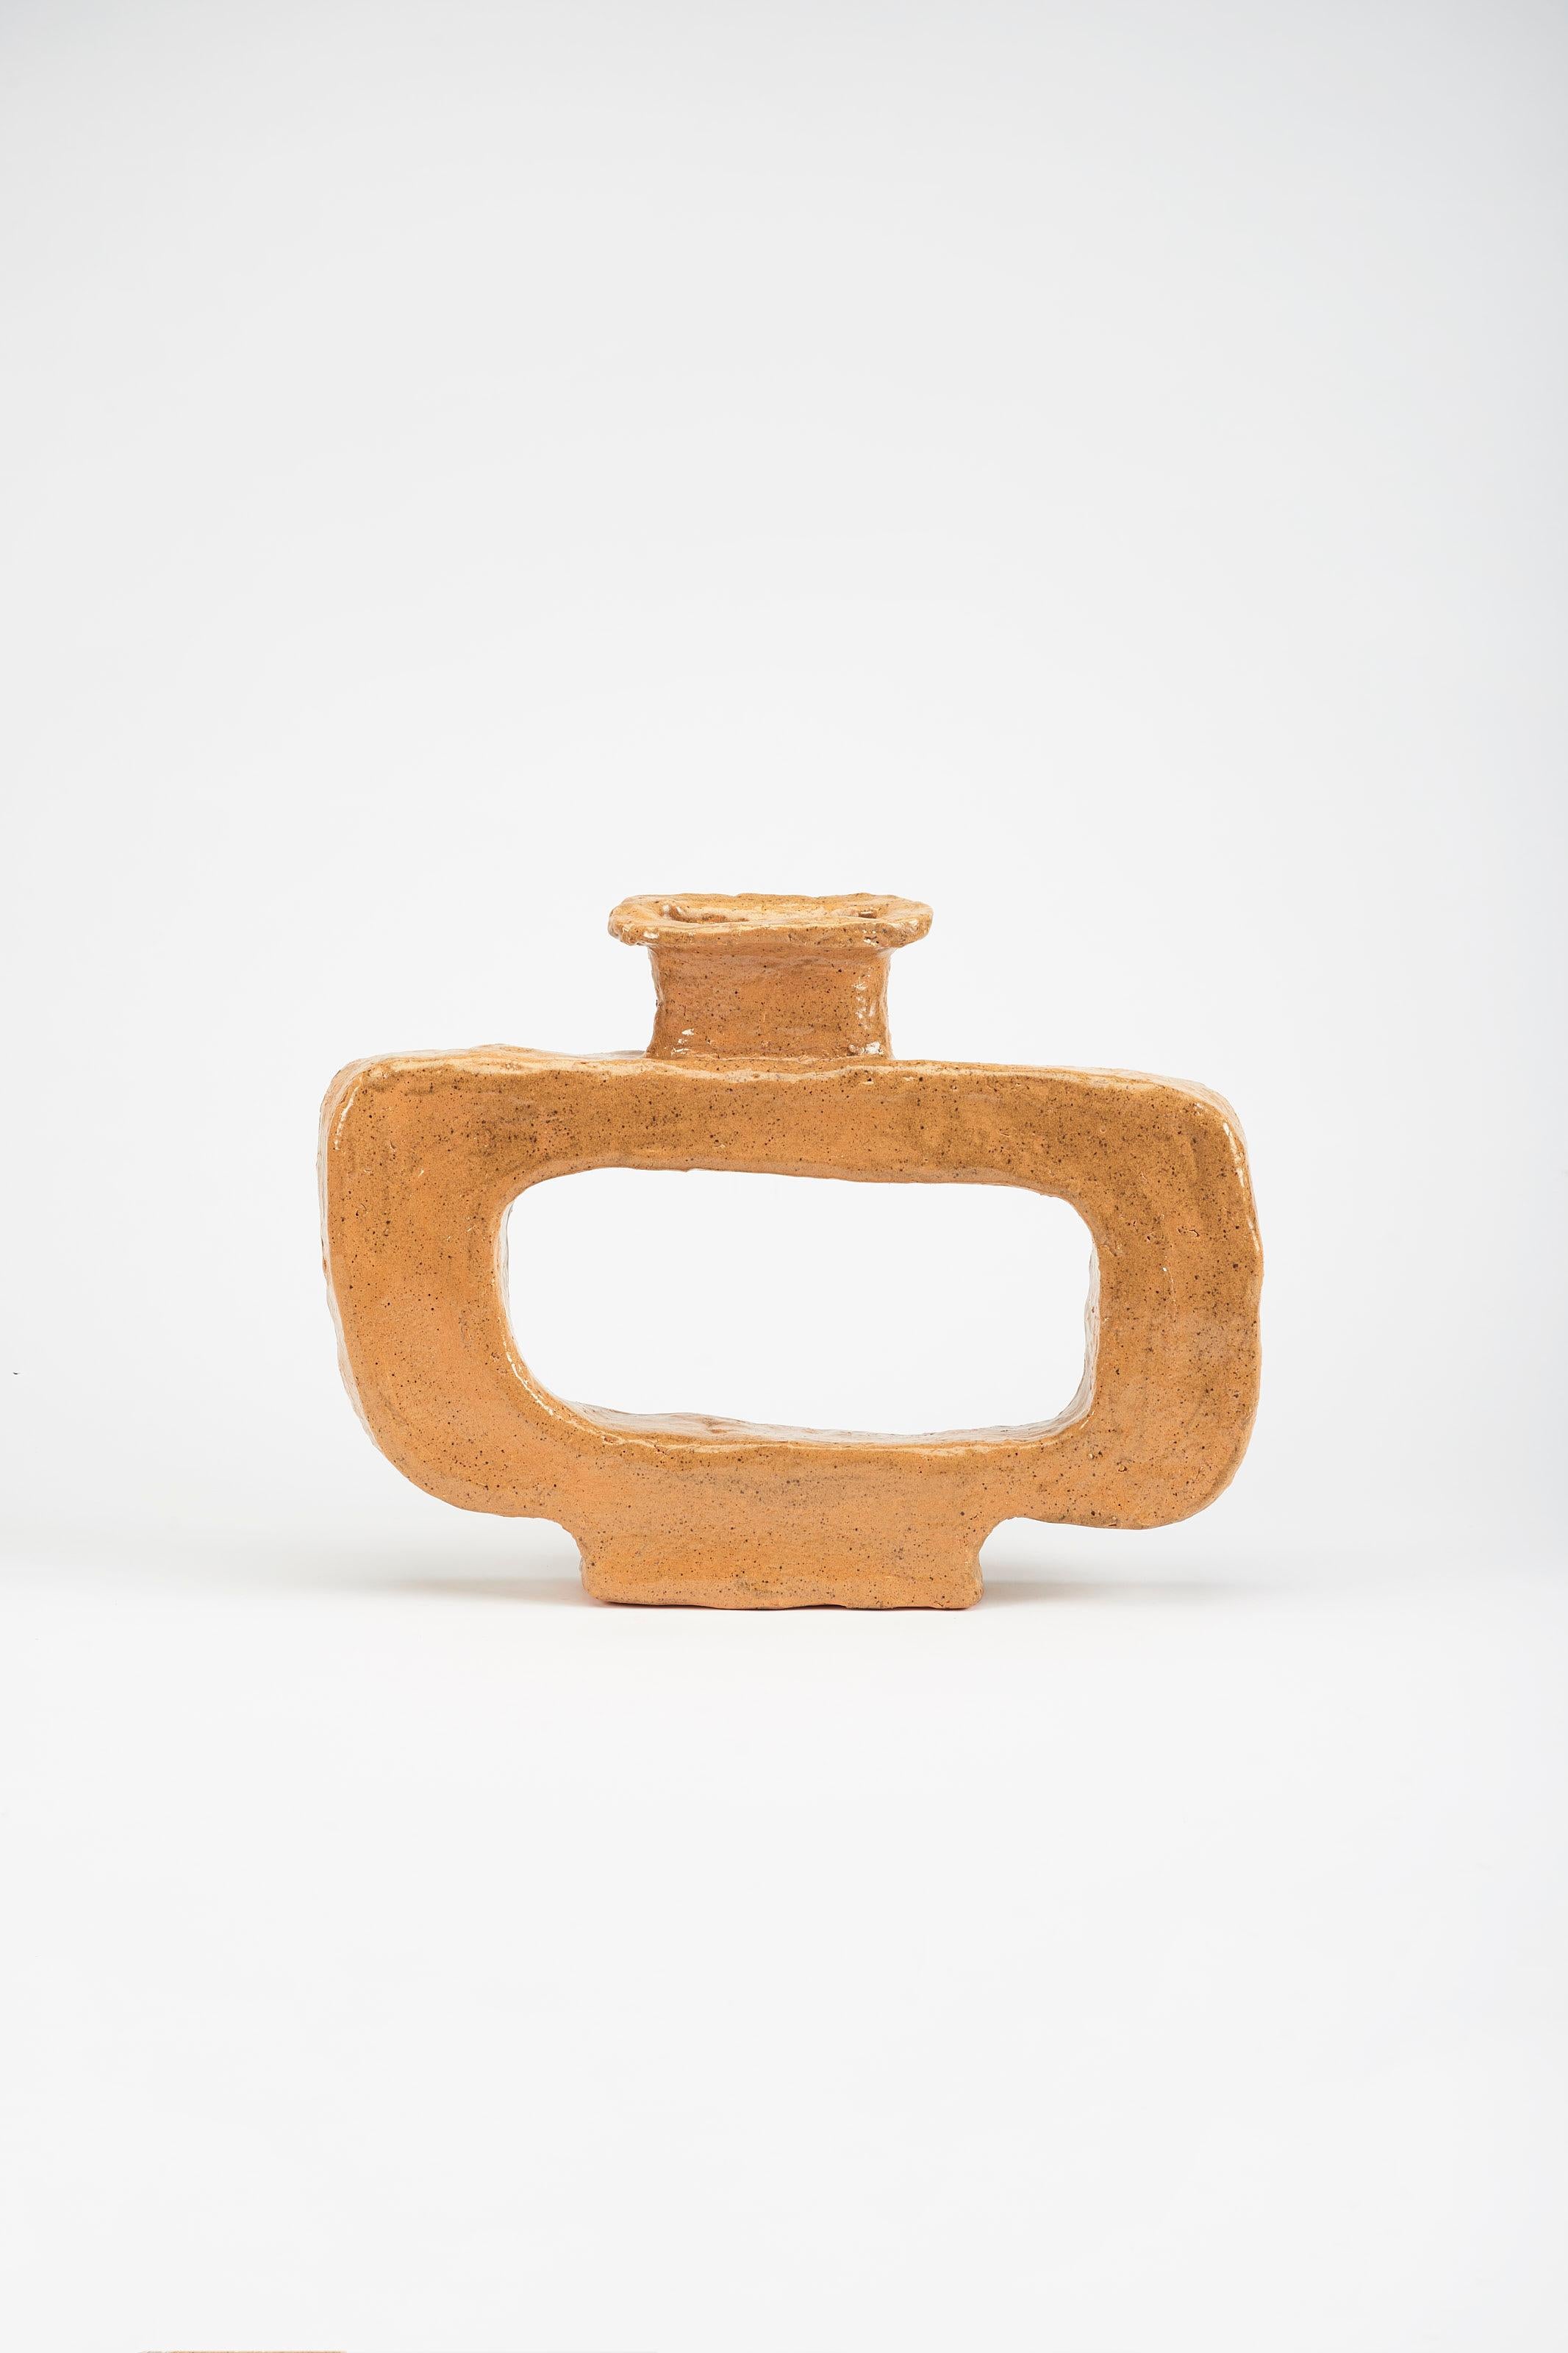 Utar-Vase von Willem Van Hooff
Abmessungen: B 35 x T 10 x H 28 cm (Die Maße können variieren, da es sich um handgefertigte Stücke handelt, die leichte Größenabweichungen aufweisen können)
MATERIAL: Glasierte Keramik.

Der Kern besteht aus einer